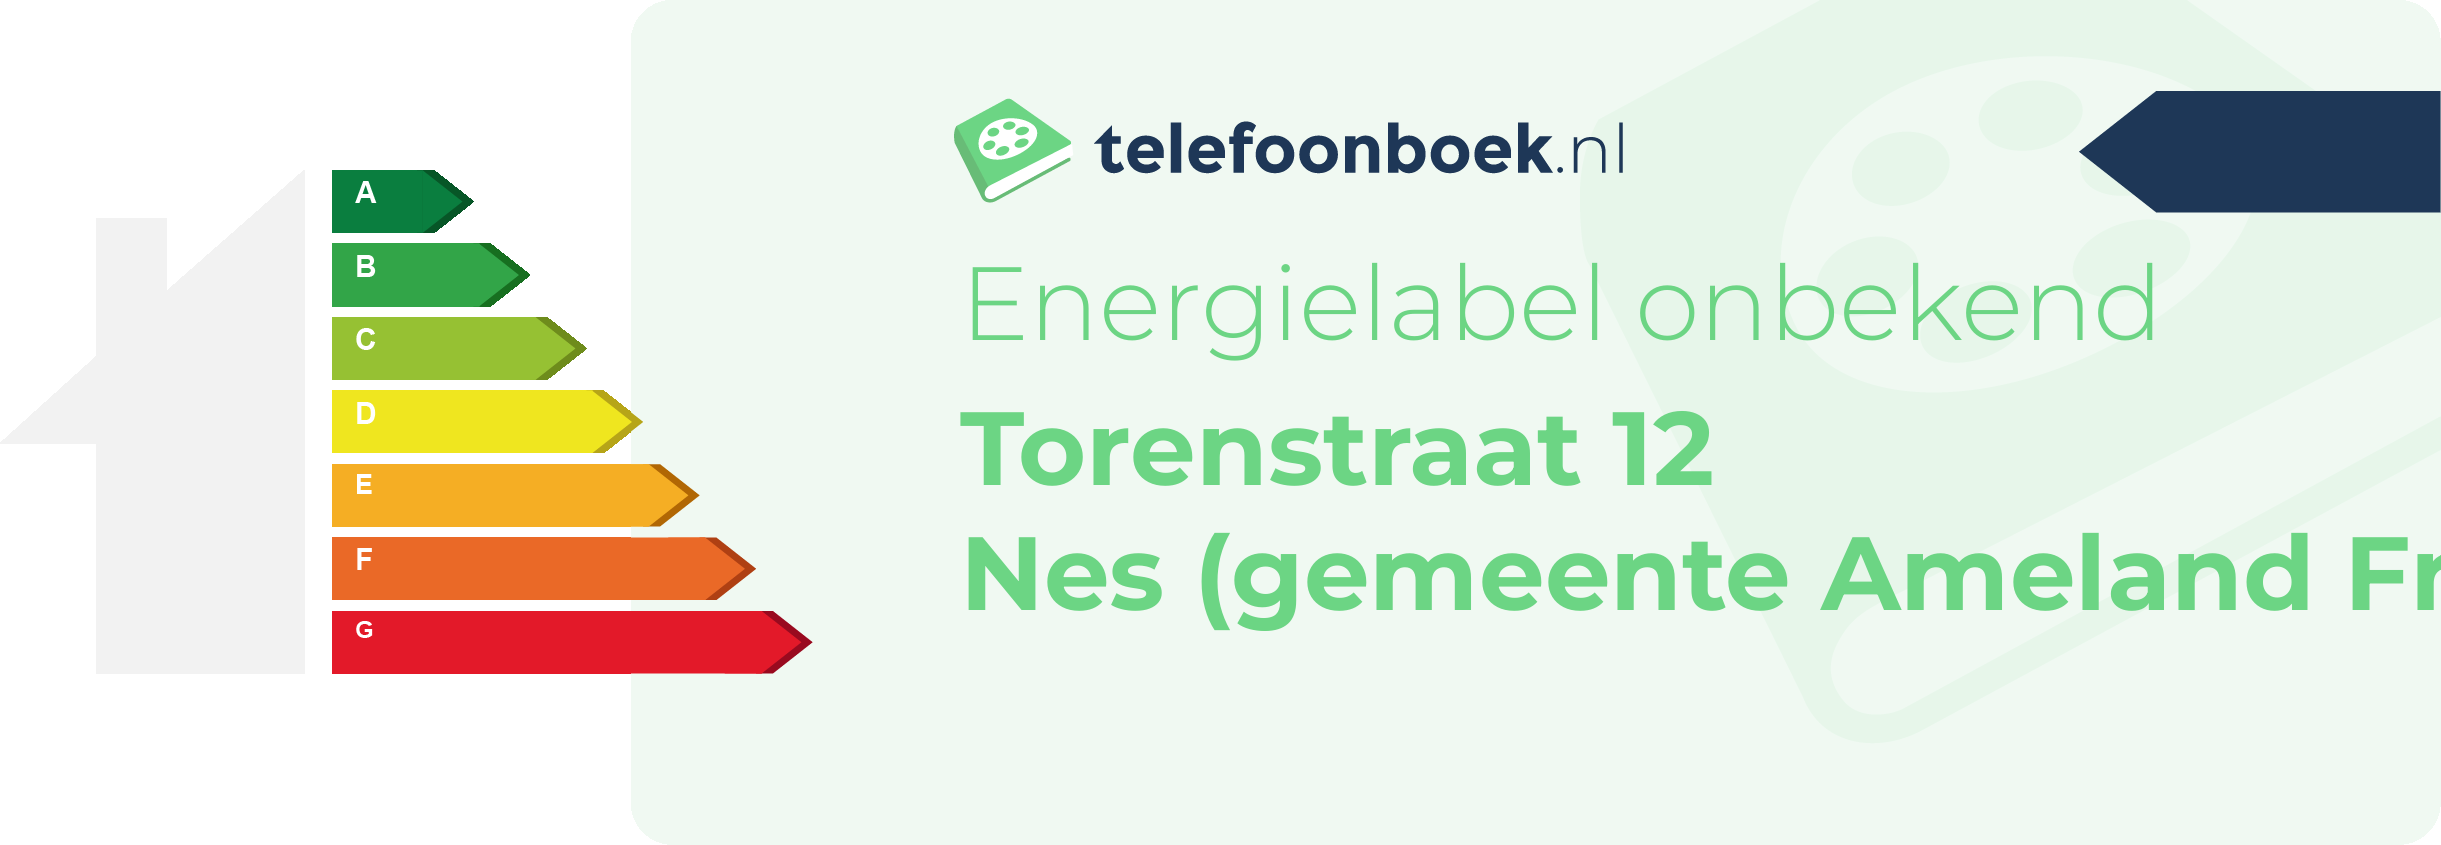 Energielabel Torenstraat 12 Nes (gemeente Ameland Friesland)